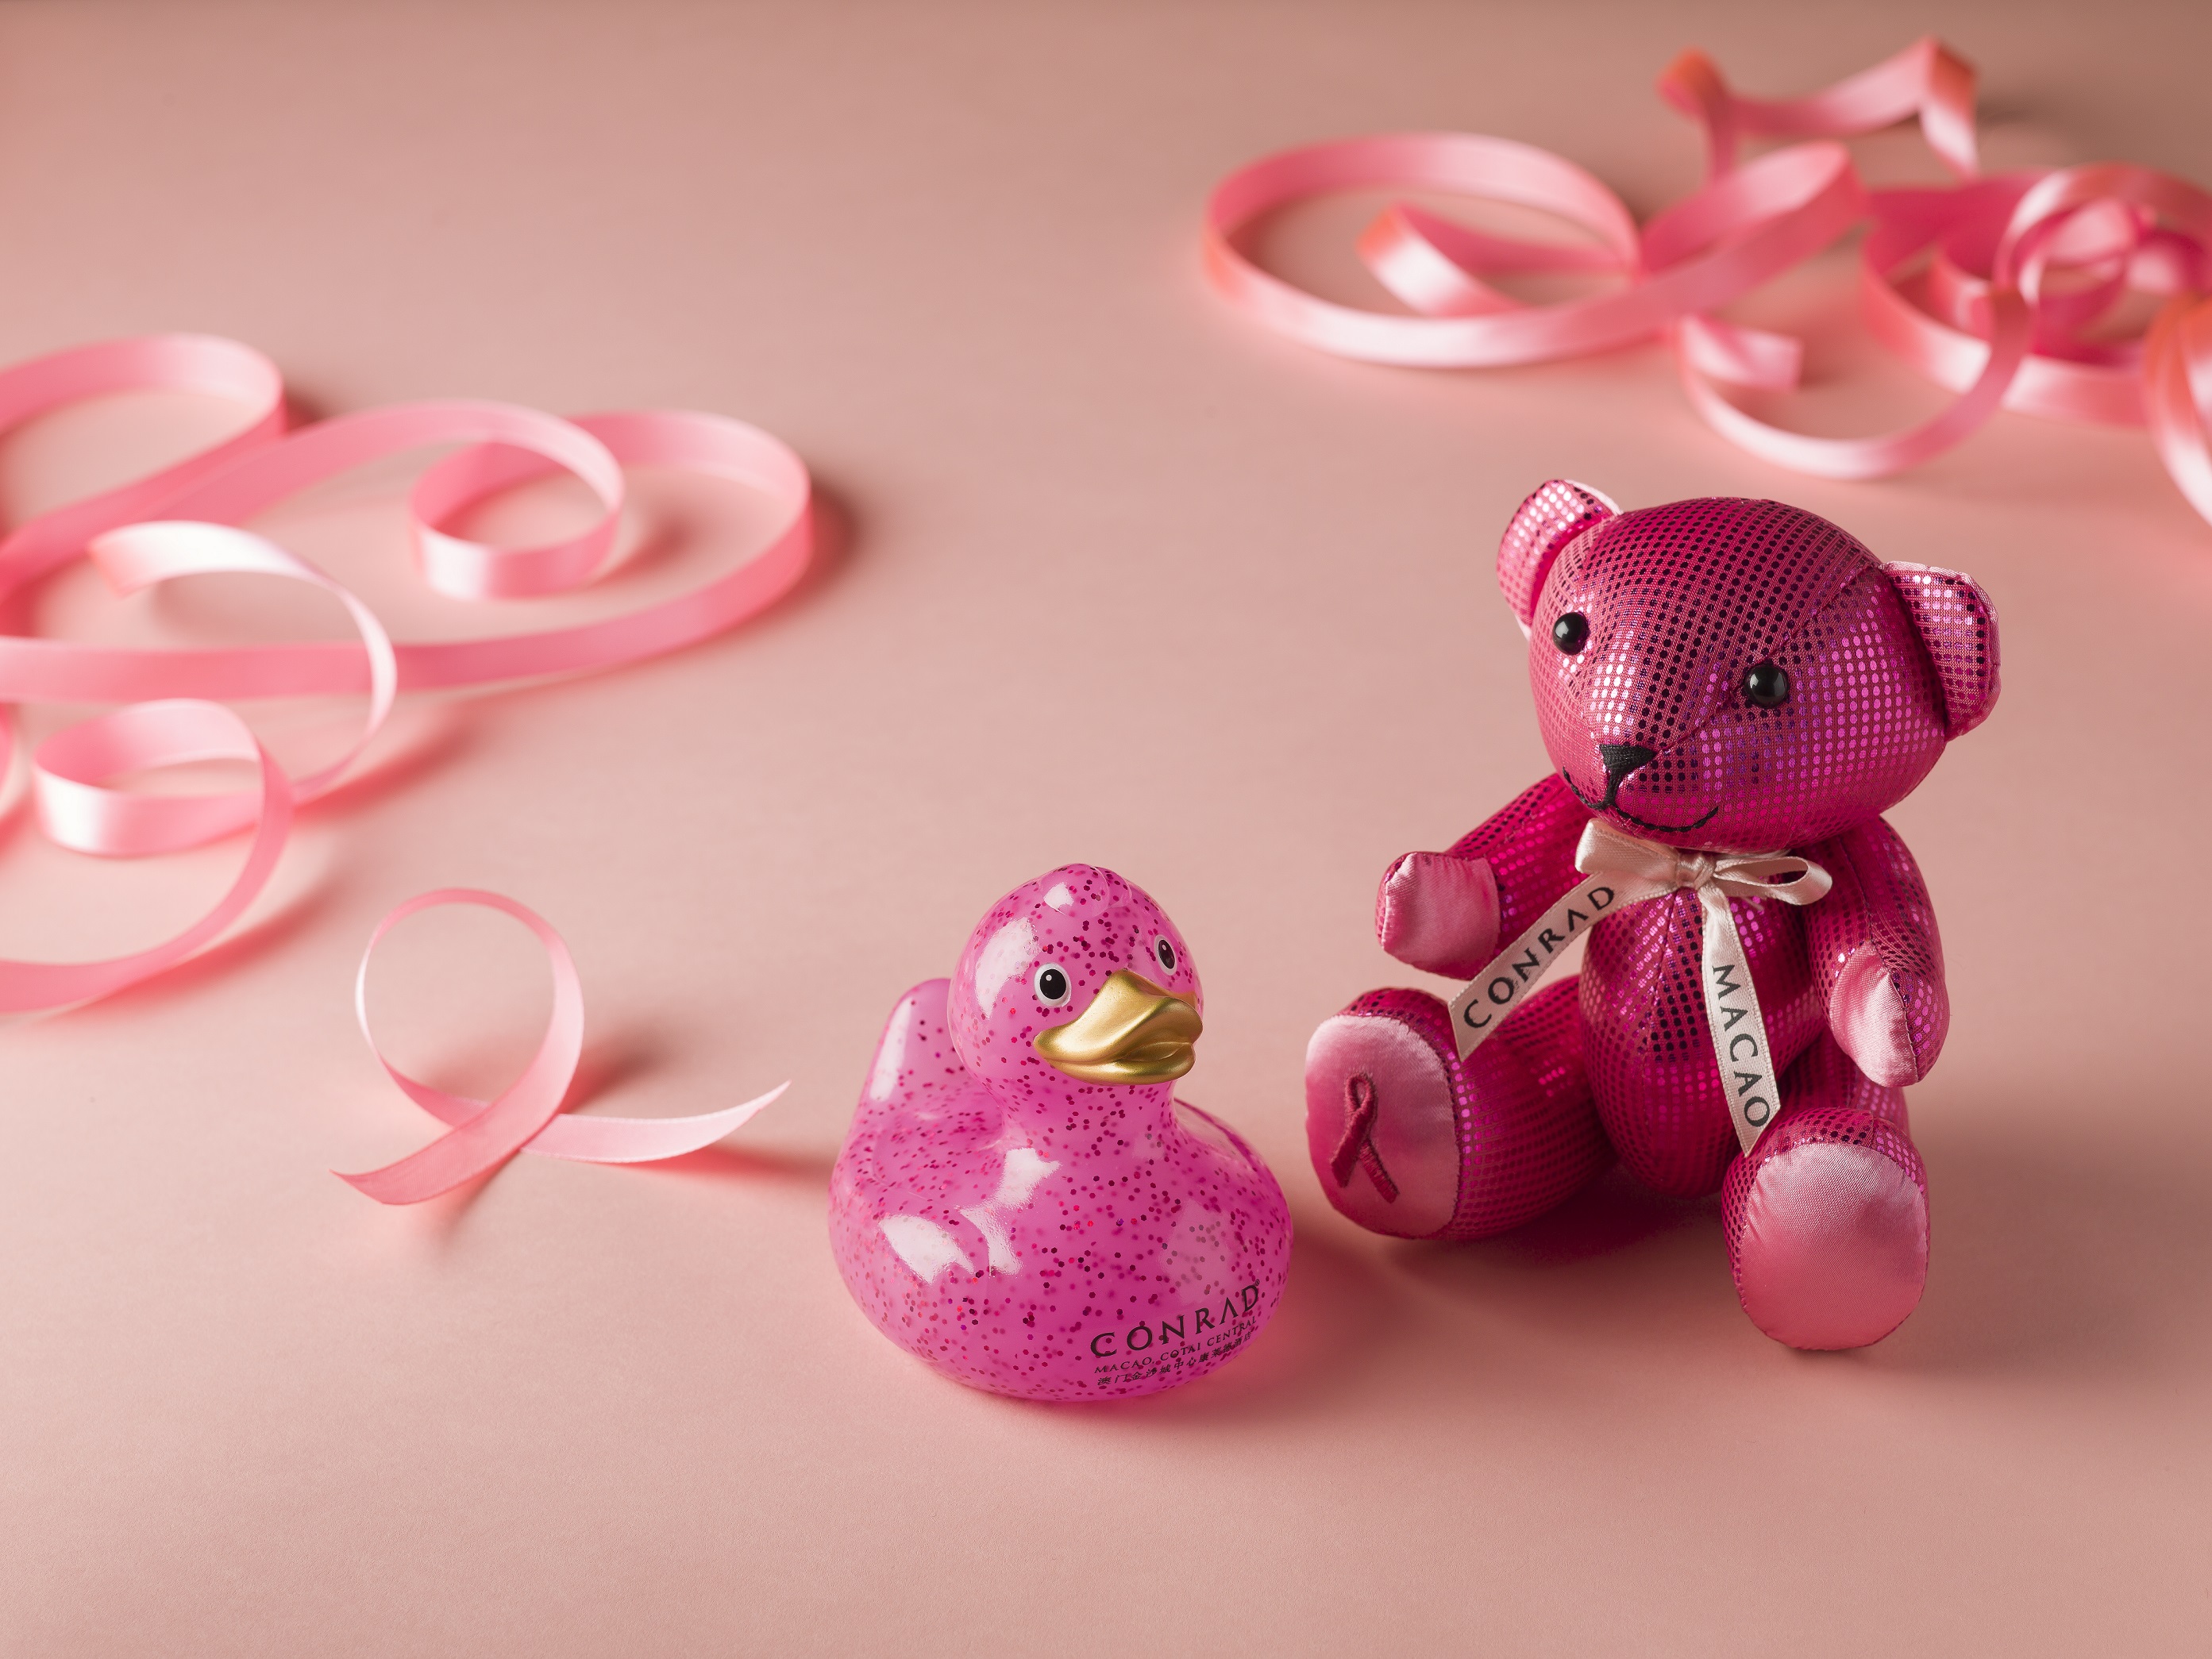 獨家限量版康萊德小熊及粉紅幸運鴨子、大堂酒廊的「粉紅下午茶套餐」皆是澳門金沙城中心康萊德酒店將於2015年10月1日至31日期間推出的一系列粉紅體驗及收藏品之一，以支持香港癌症基金會每年一度的「粉紅革命」活動並提高公眾對乳癌的關注及籌募善款。